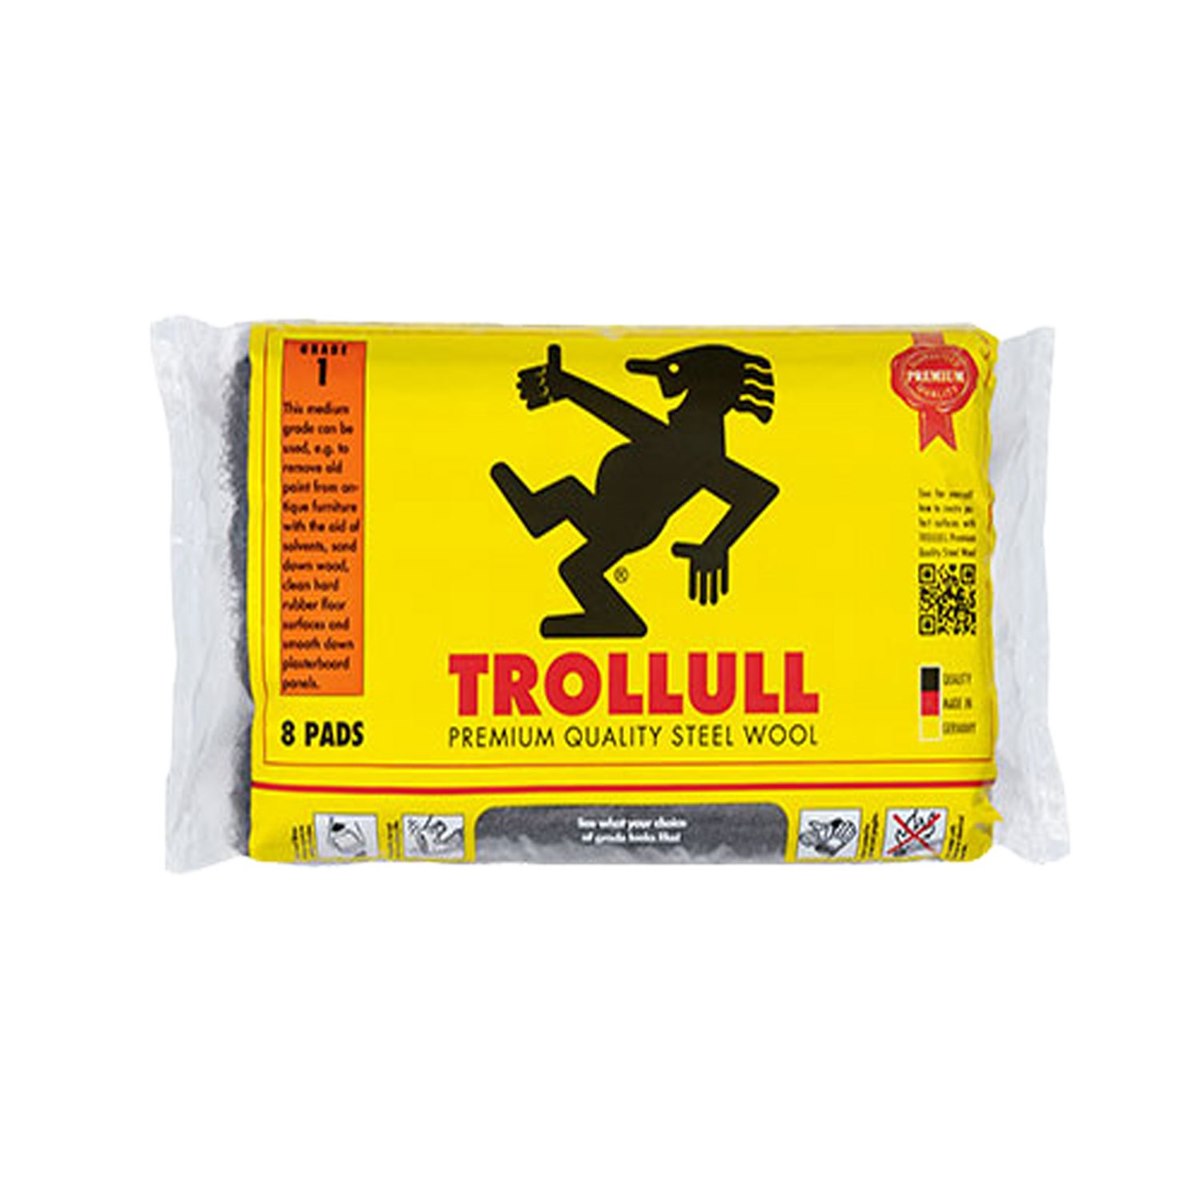 Trollull 8 Pads Steel Wool 00